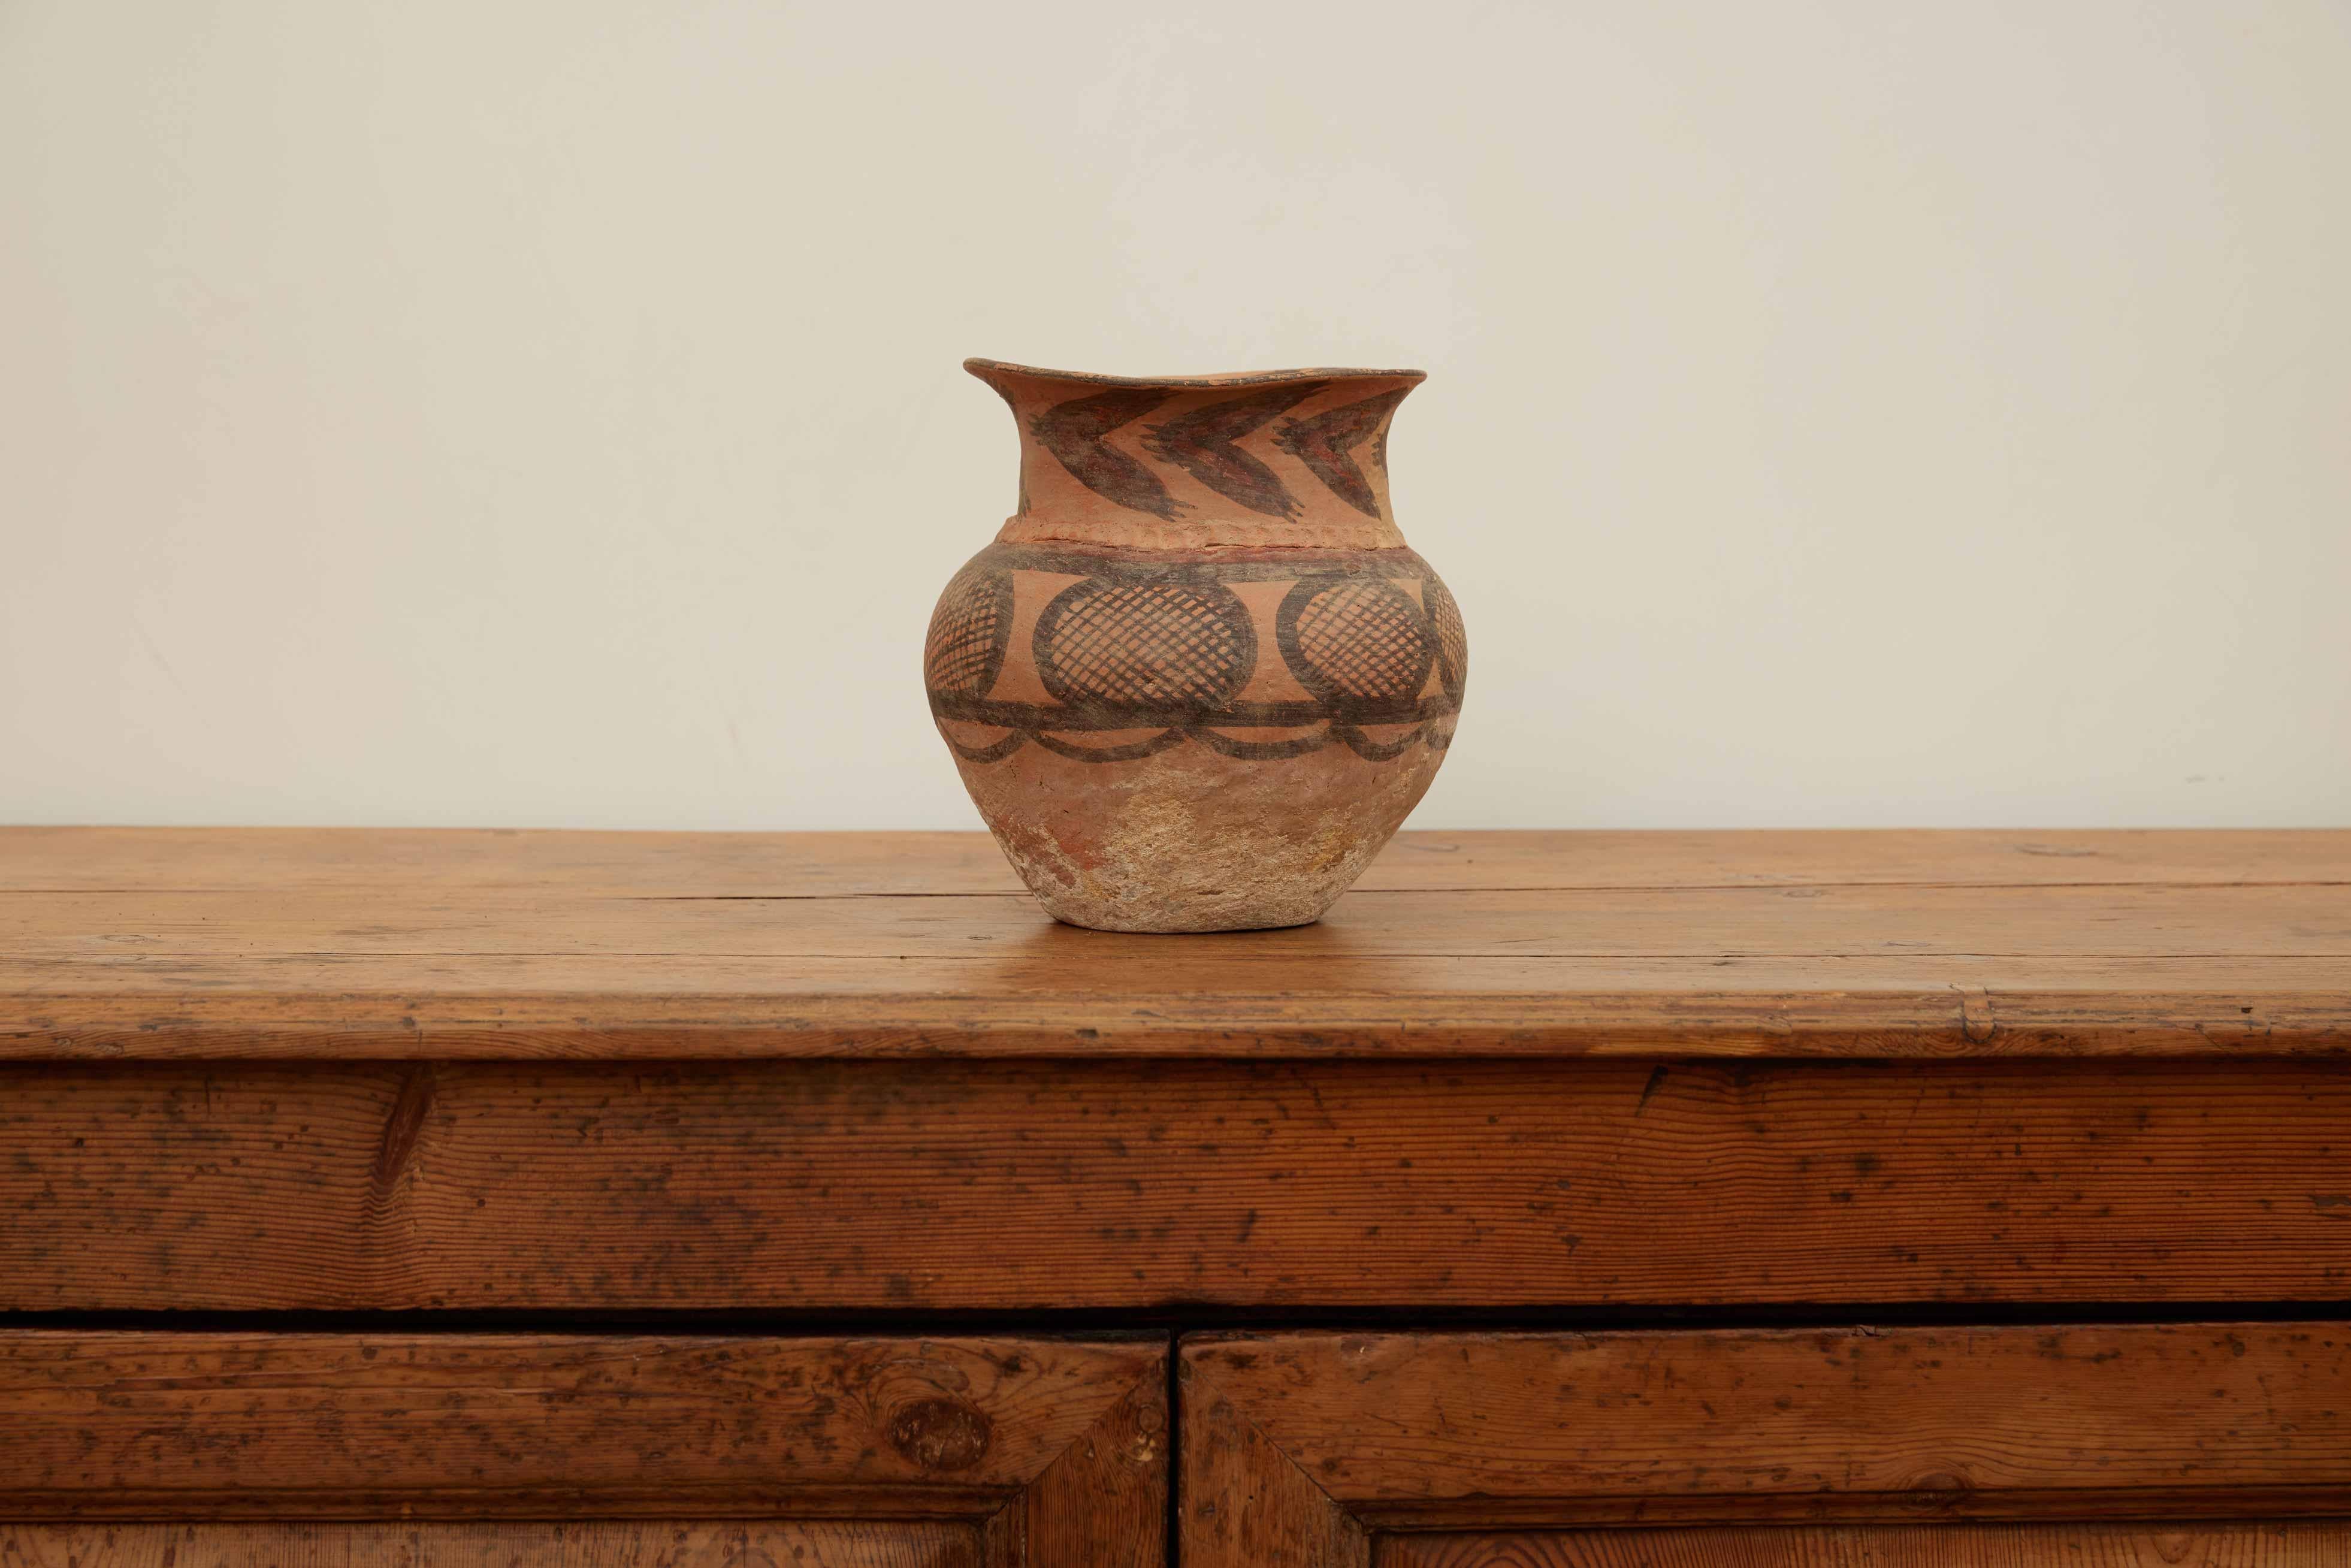 Chinesische Vase aus dem Neolithikum

Chinesische Töpferwaren, Gegenstände aus Ton, die durch Hitze gehärtet werden: Steingut, Steinzeug und Porzellan, vor allem in China hergestellt. Nirgendwo auf der Welt hat die Töpferei eine solche Bedeutung